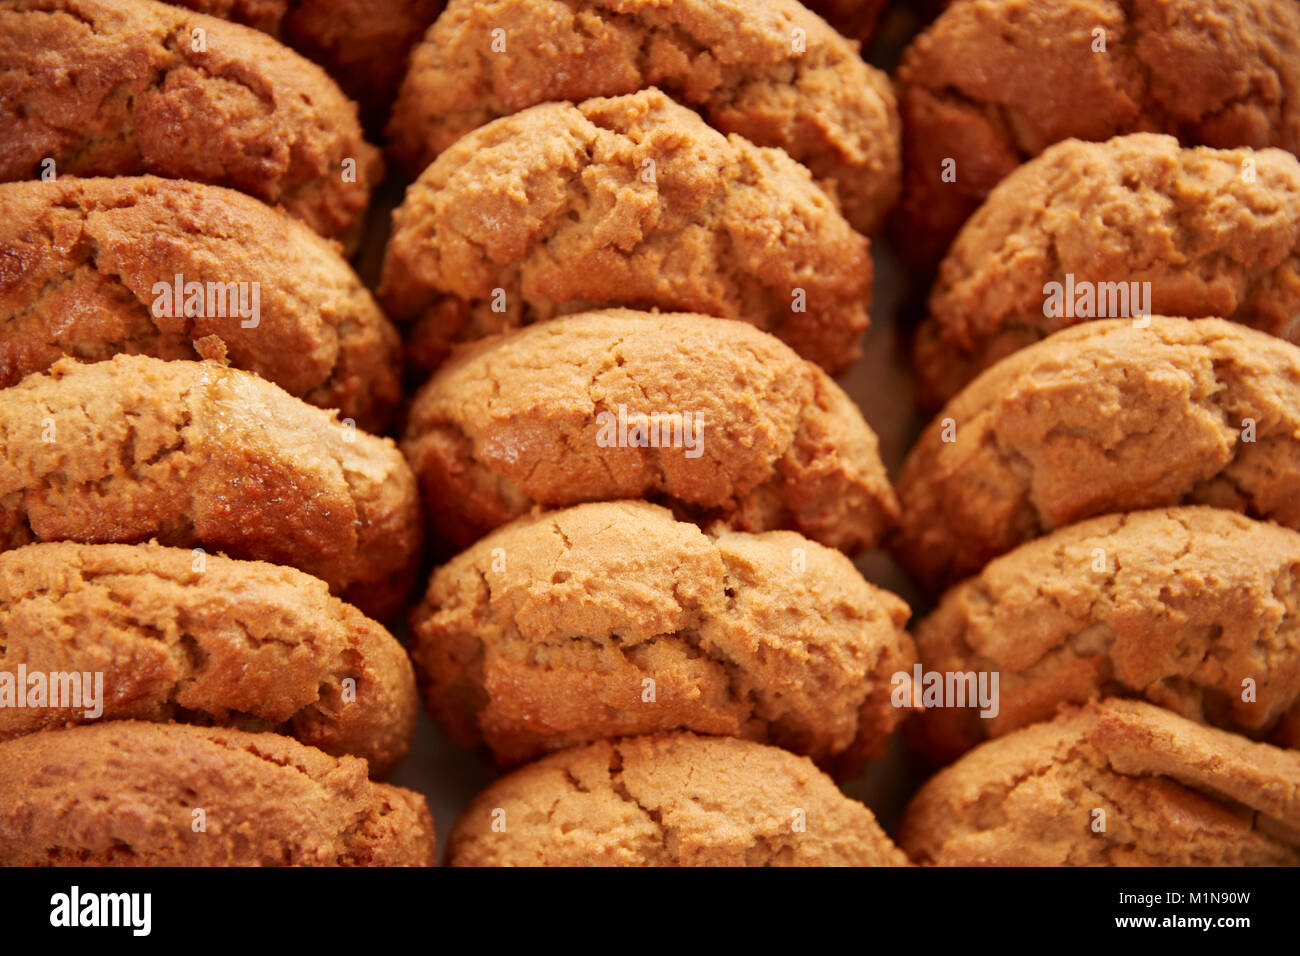 Visualización de galletas recién horneadas en la cafetería. Foto de stock